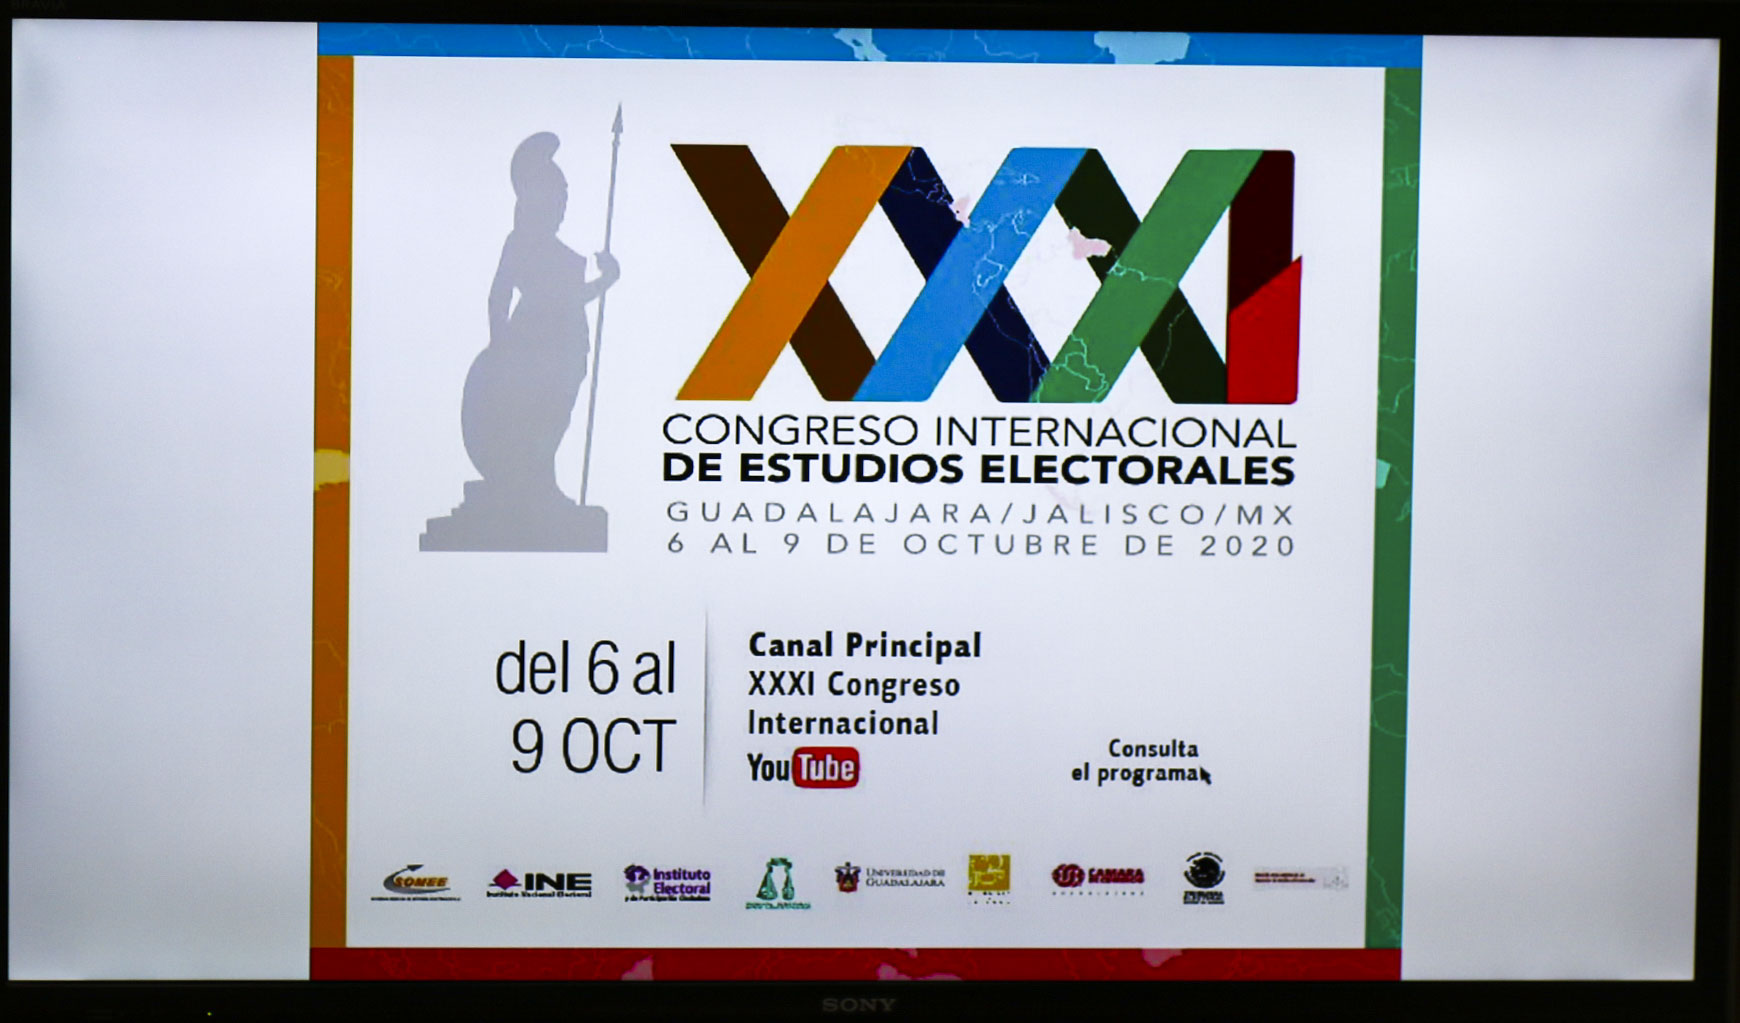 La Universidad de Guadalajara (UdeG) albergará, del 6 al 9 de octubre, el XXXI Congreso Internacional de Estudios Electorales